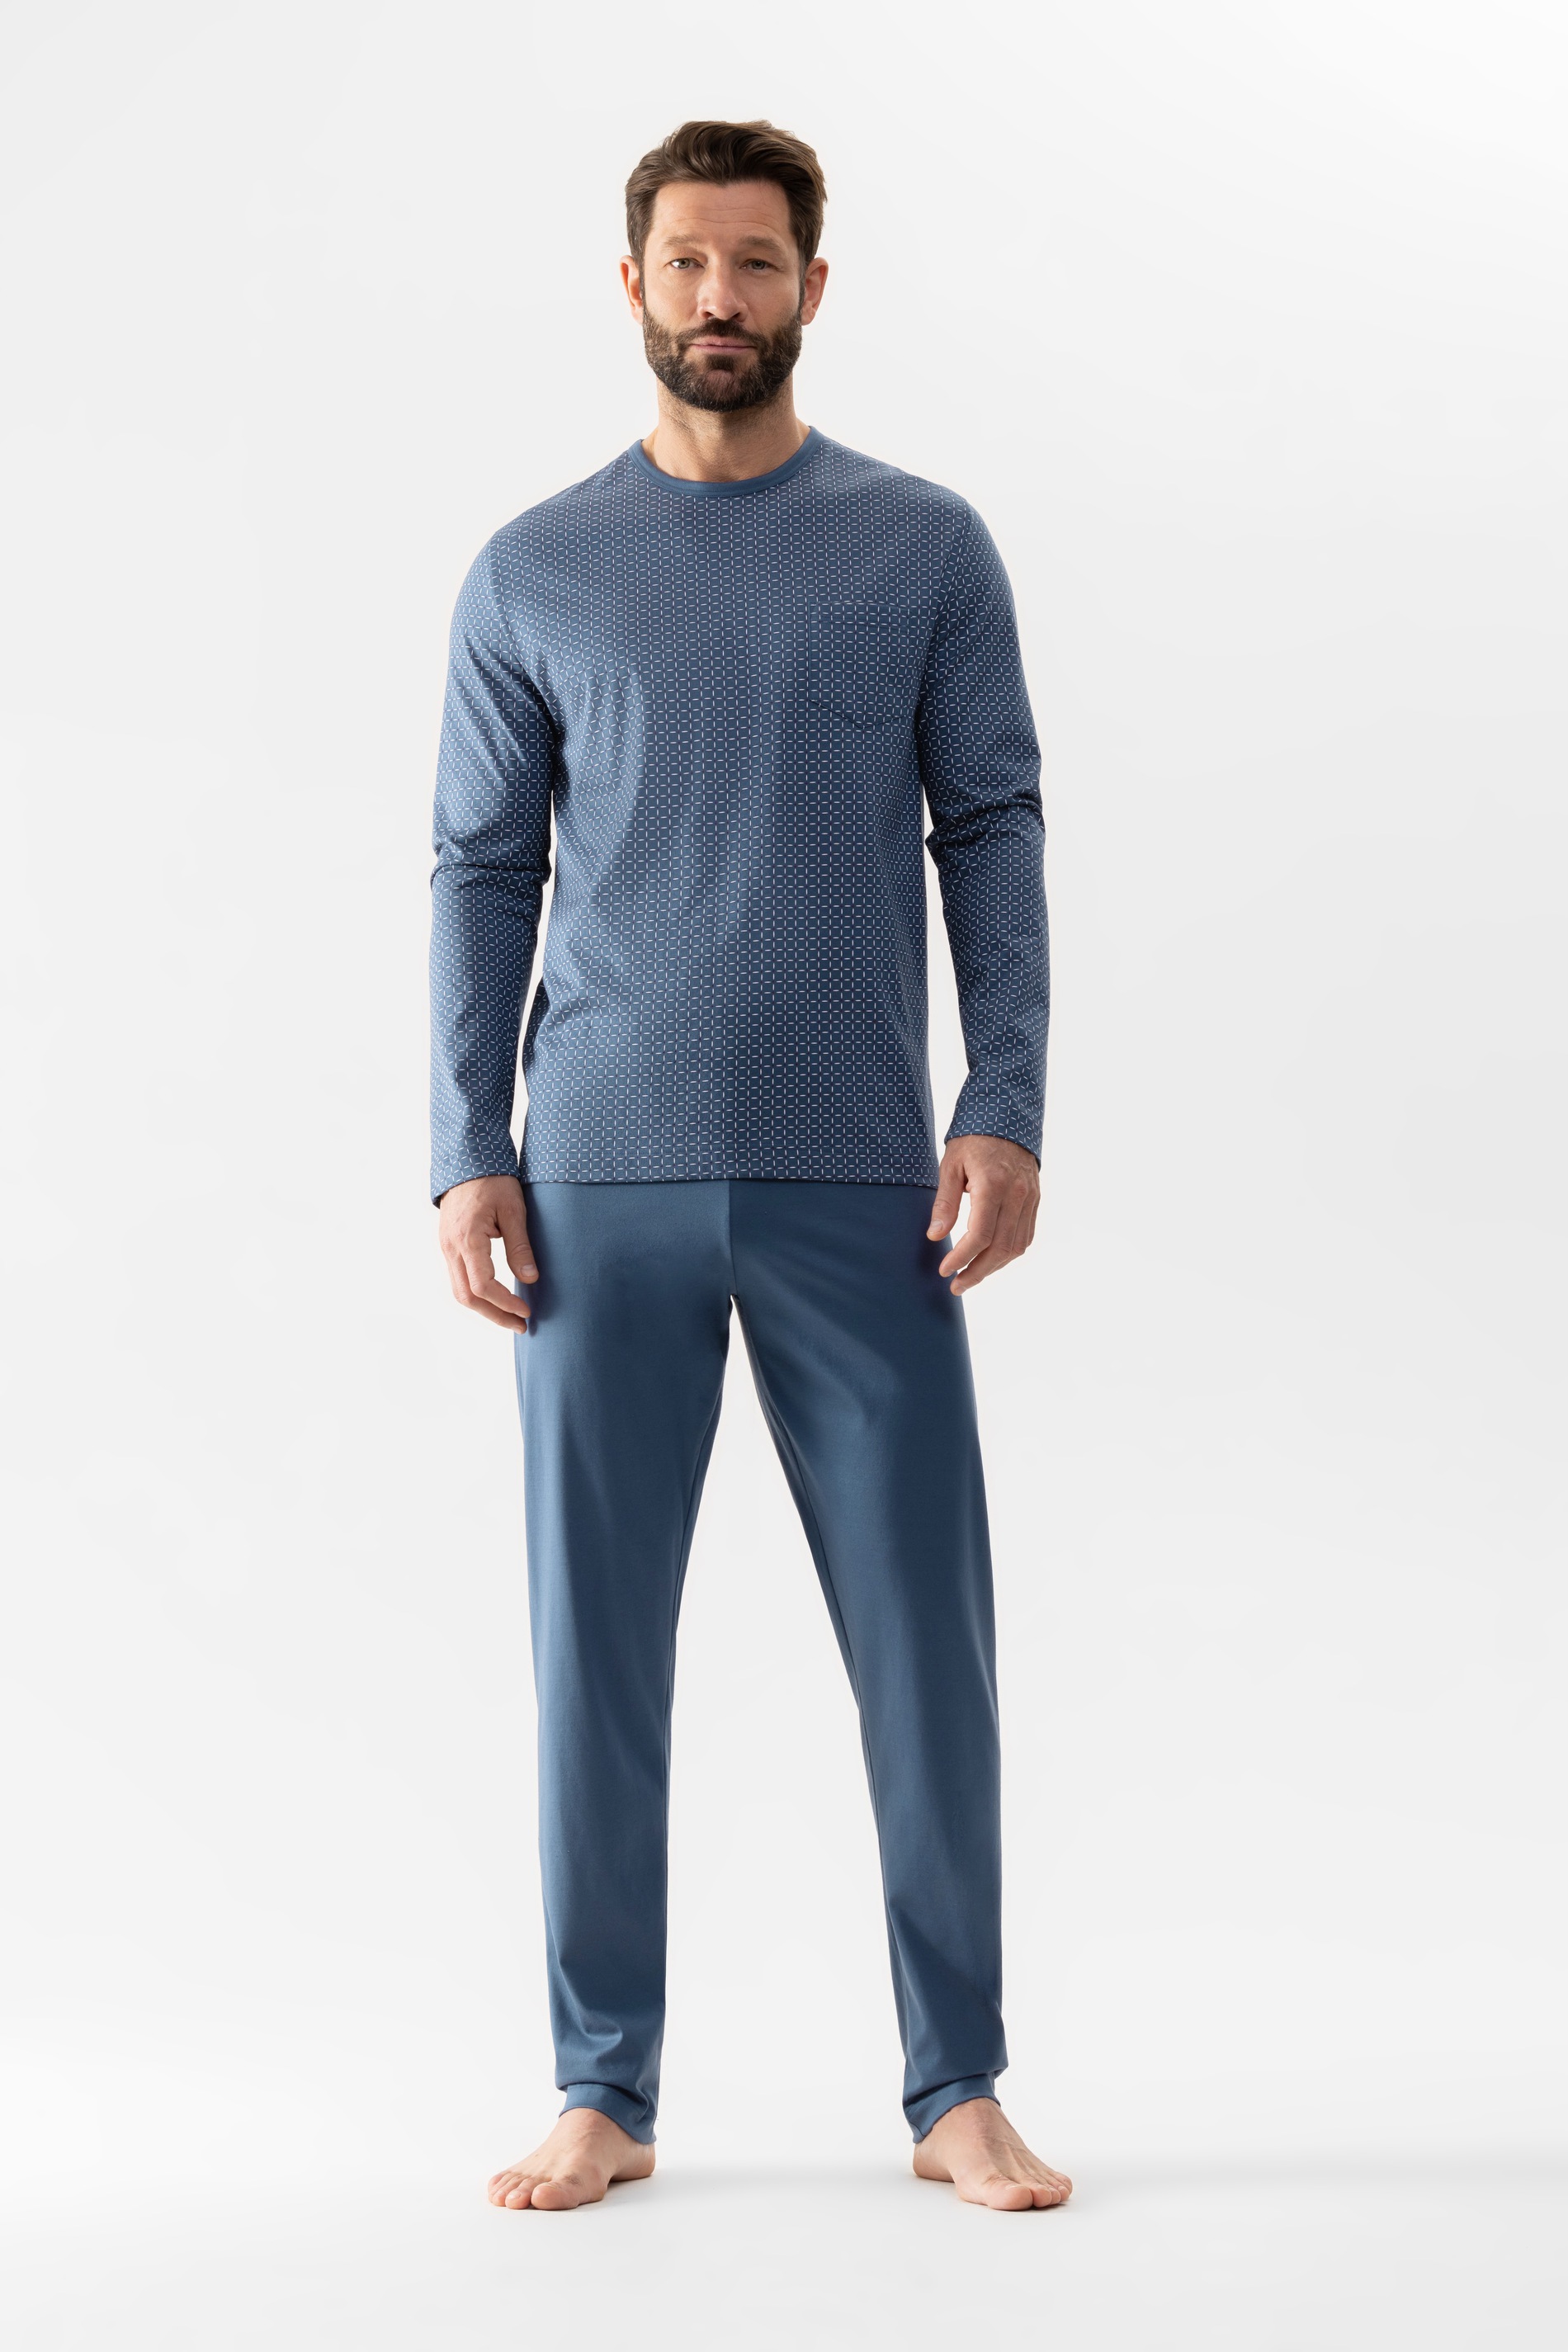 Herren-Schlafanzug mit gemustertem Oberteil aus reiner Baumwolle